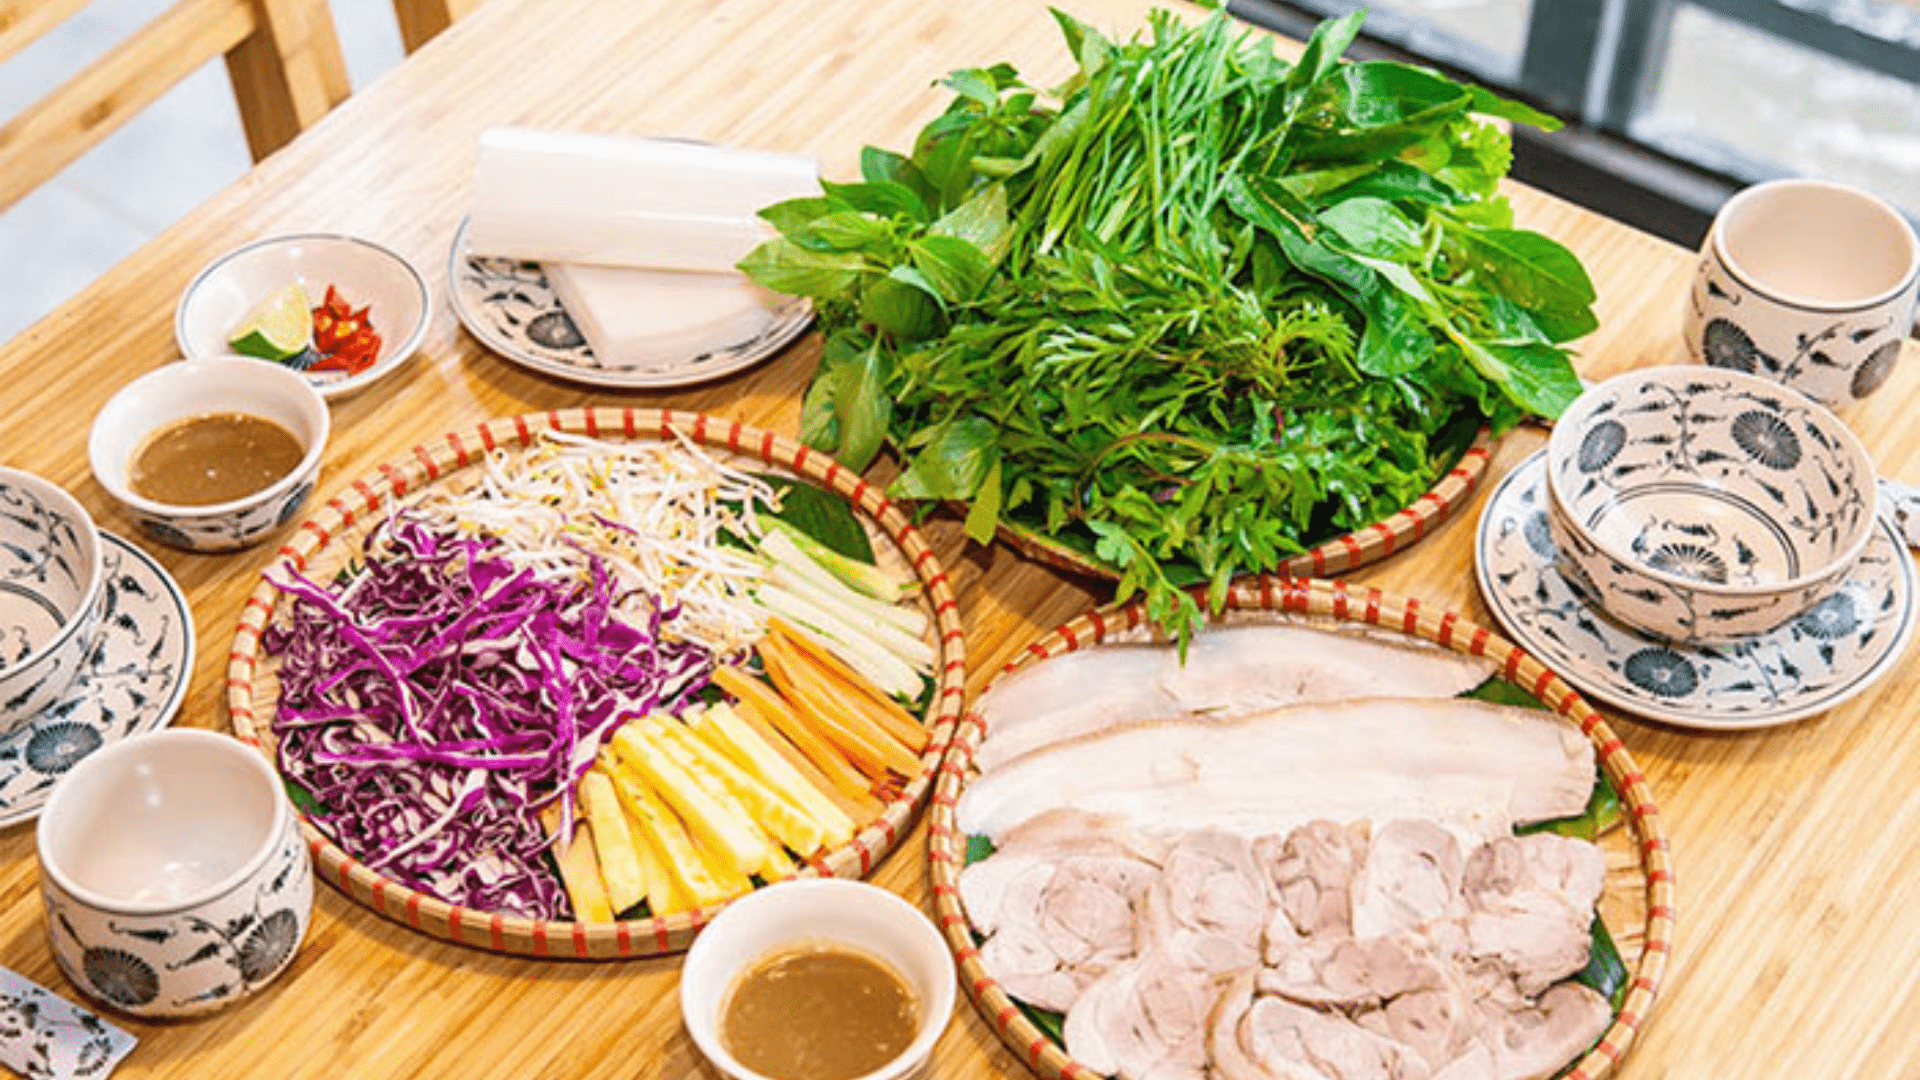 Đặc sản Trần Đà Nẵng - Nhà hàng bán bánh tráng thịt heo Đà Nẵng cực chất lượng